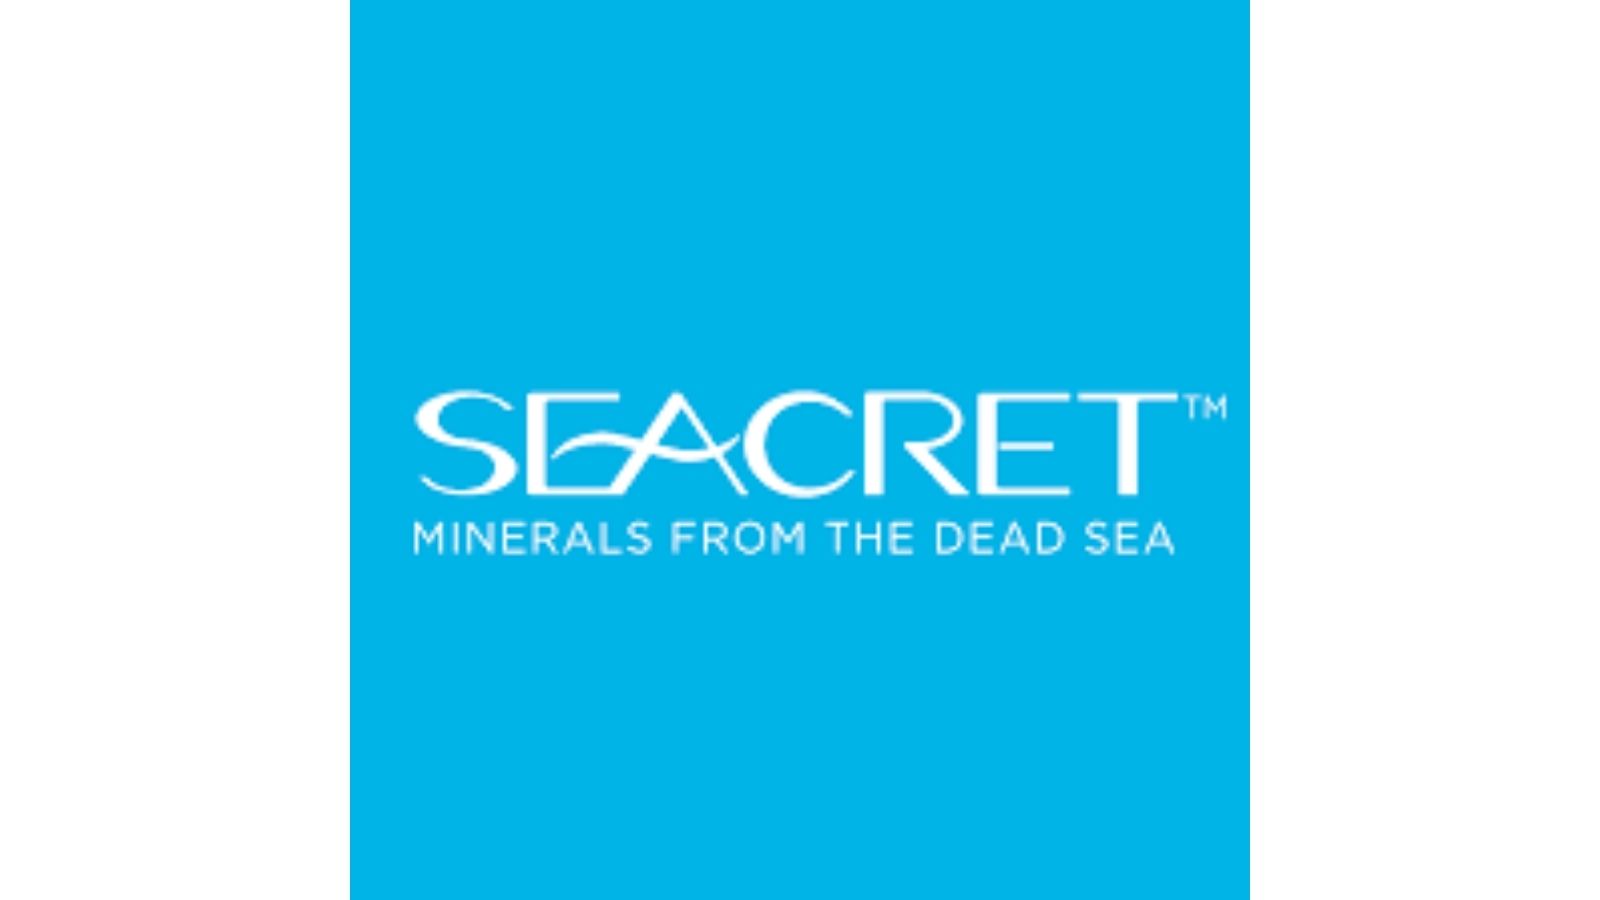 SEACRET,奢华护肤品和水疗产品